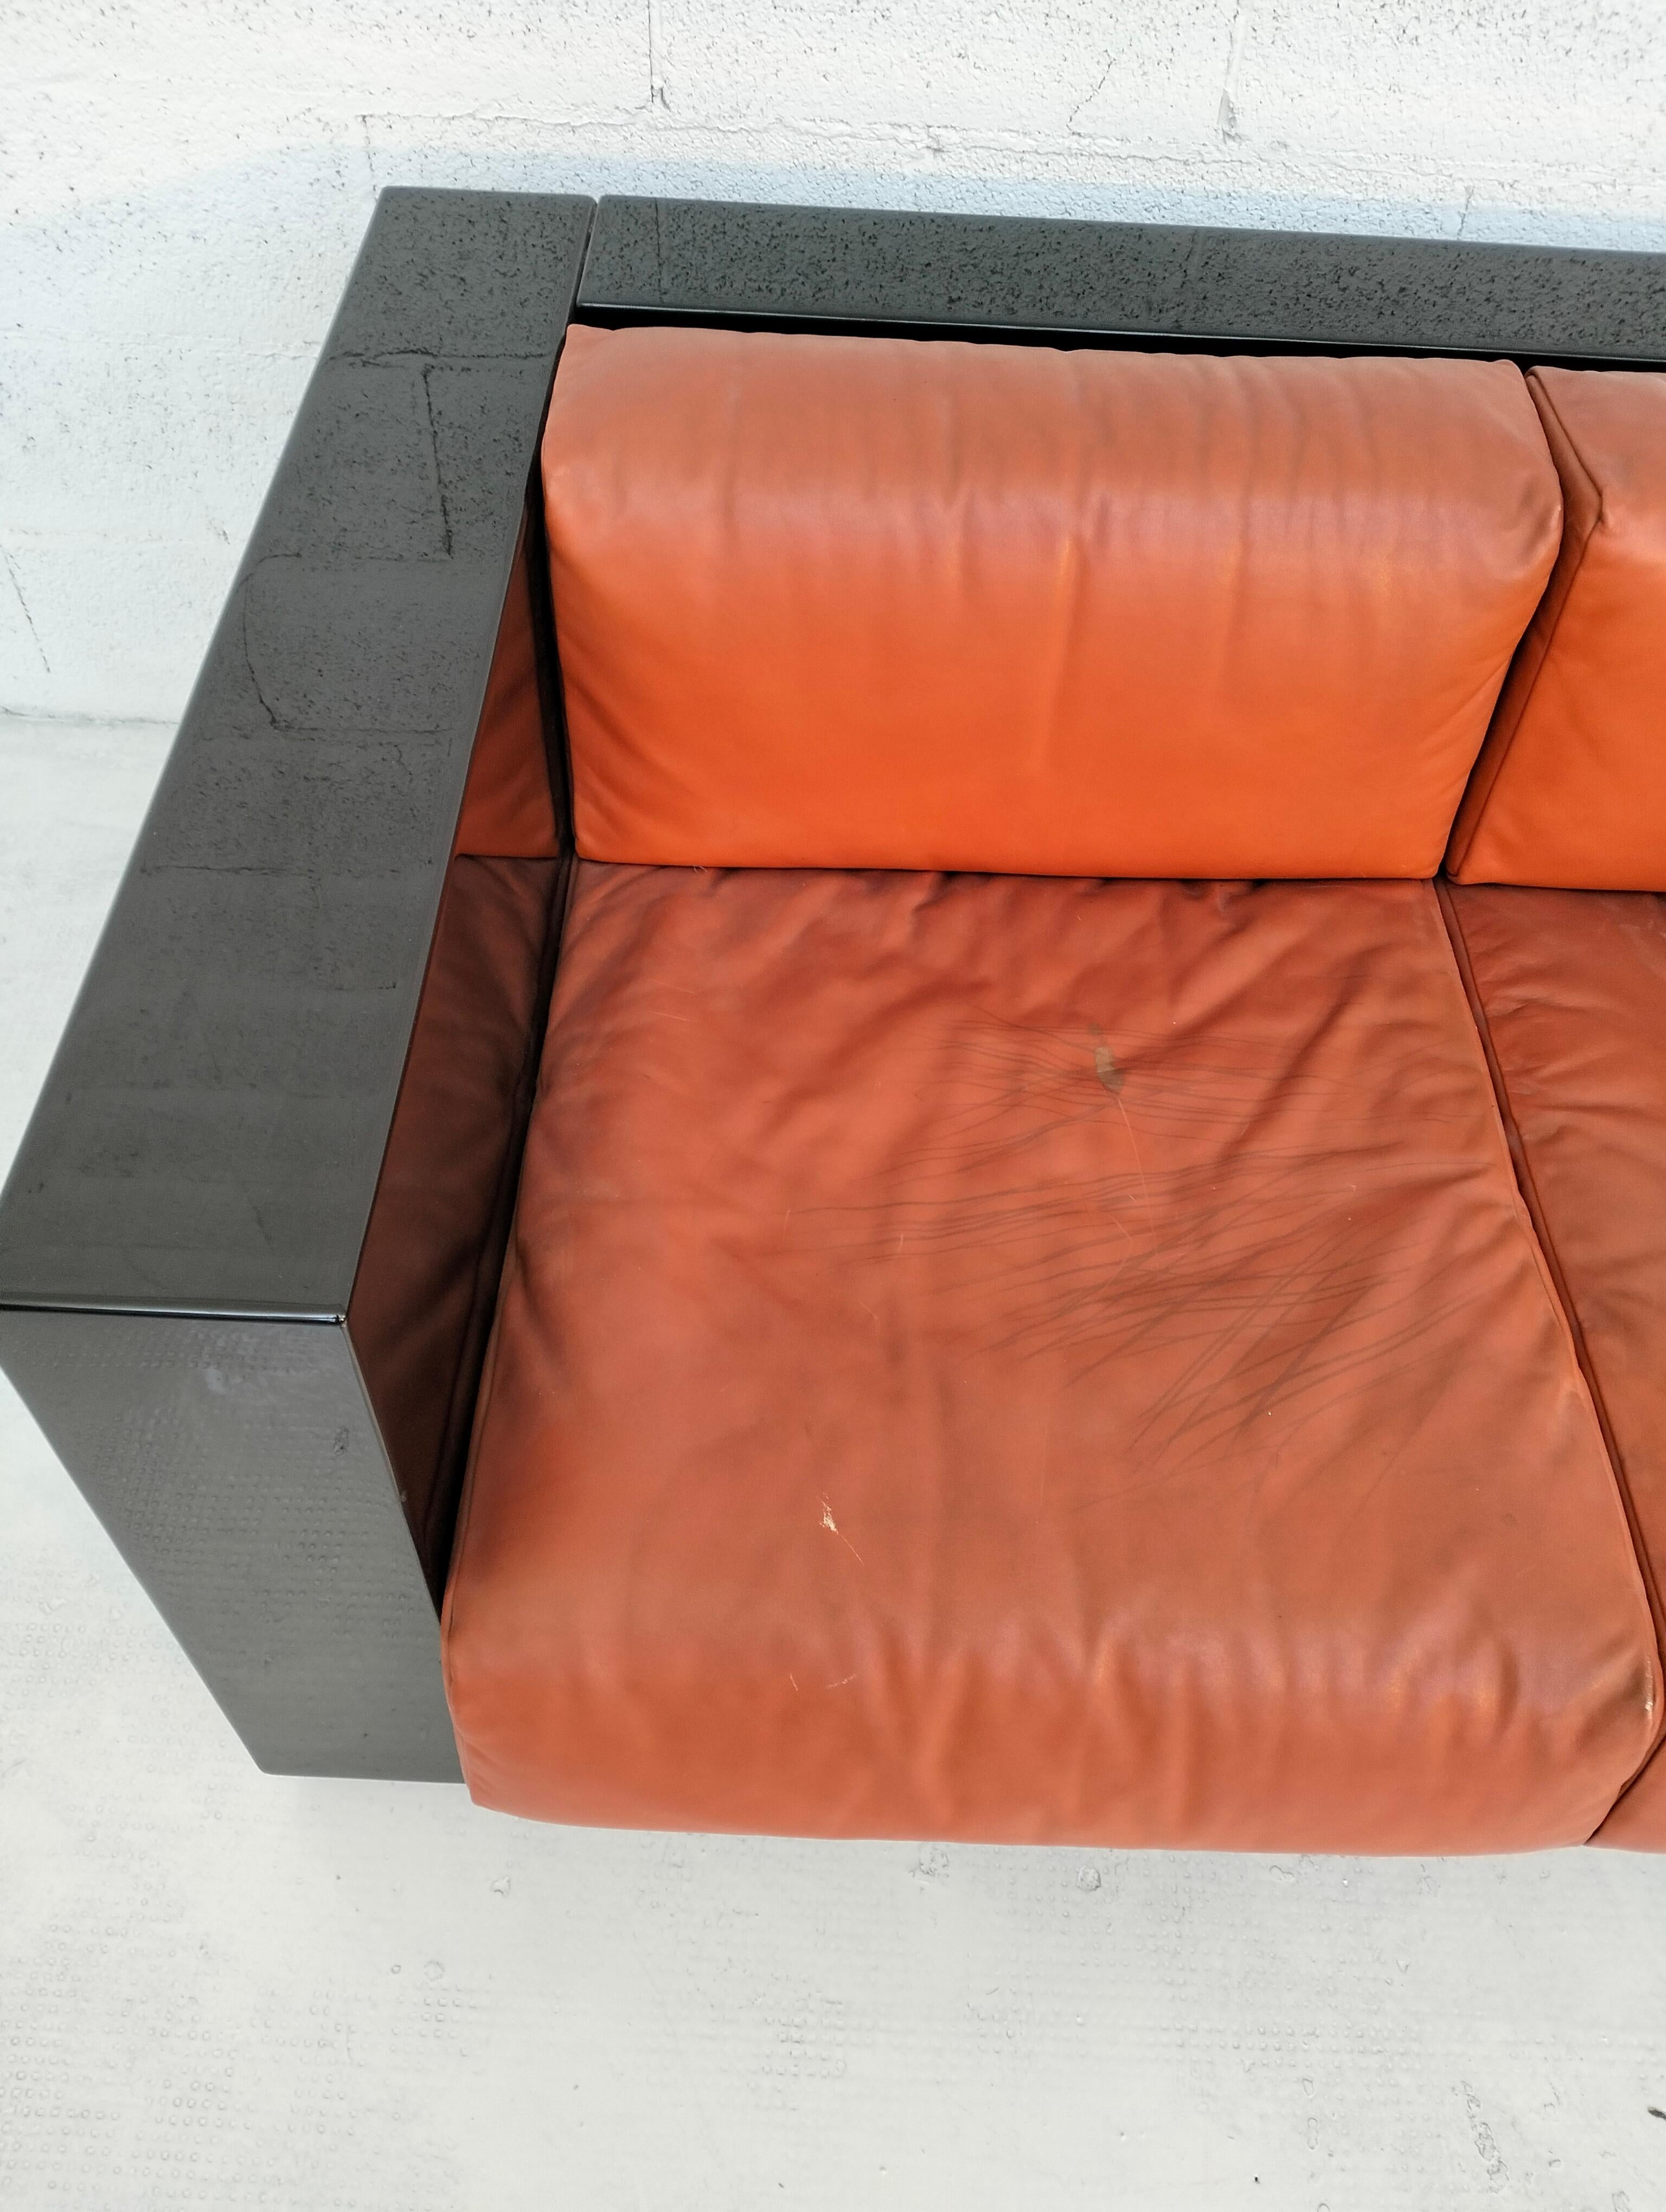 Italian Black “Saratoga” sofa by Massimo and Lella Vignelli for Poltronova 60s, 70s For Sale